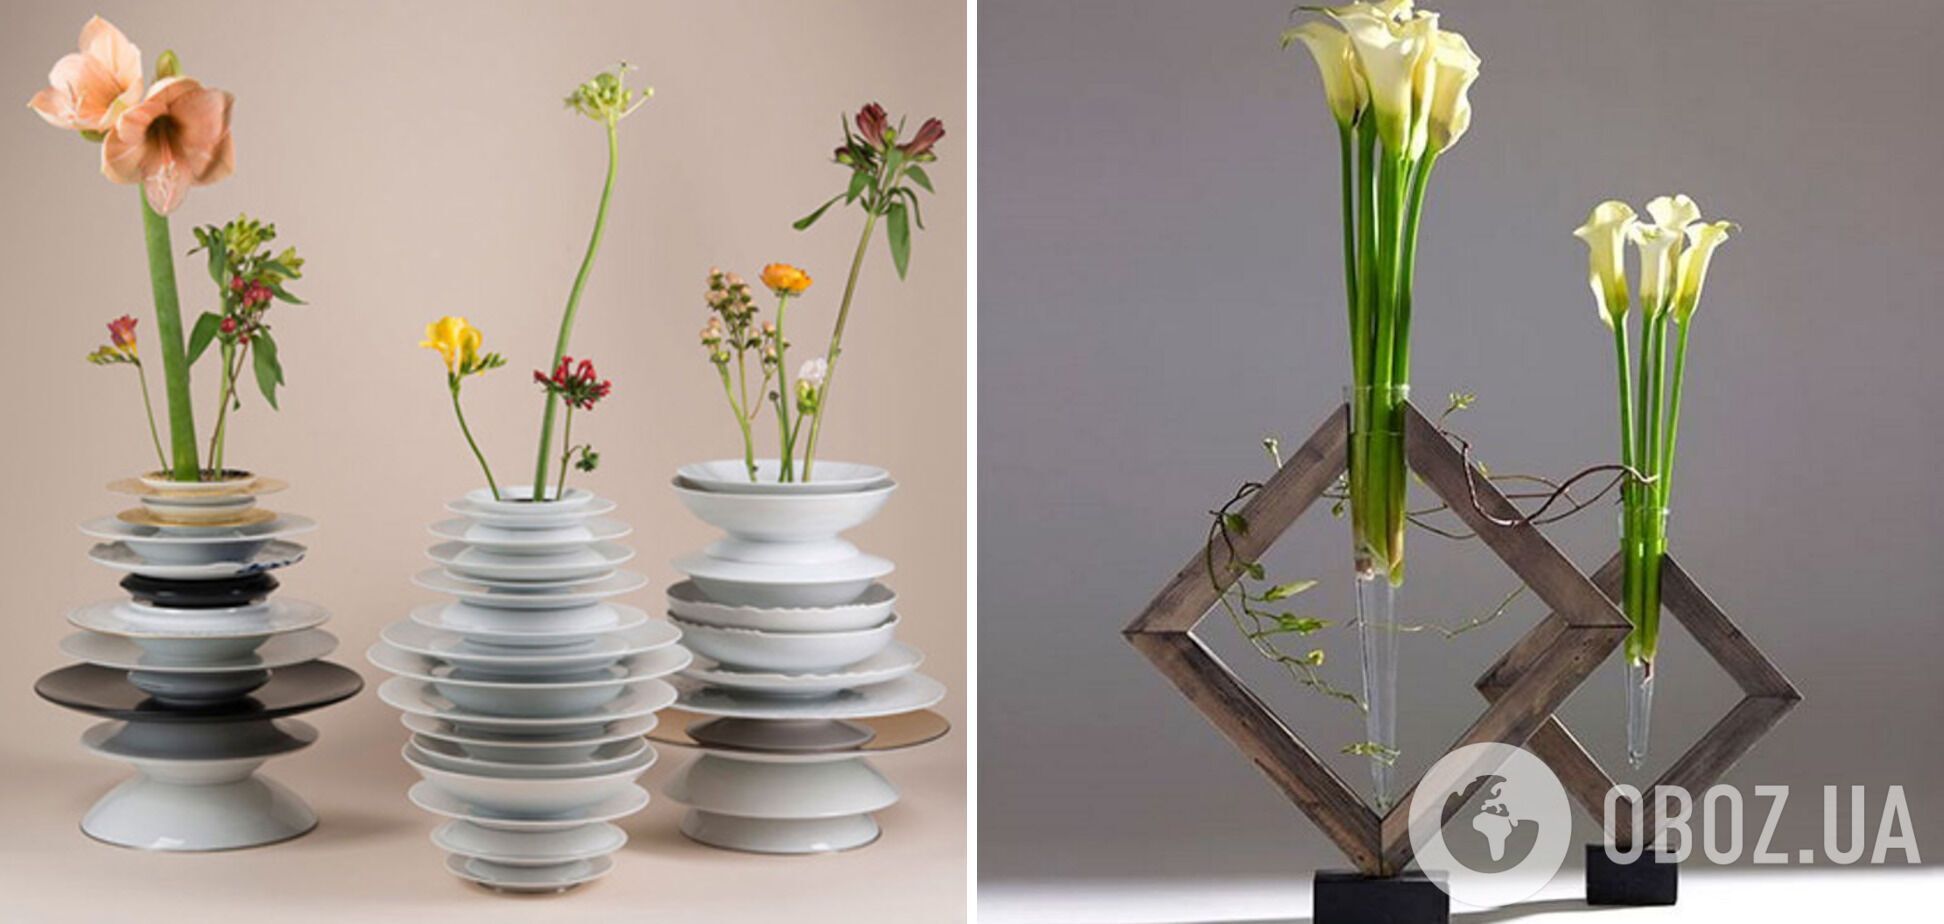 Необычные вазы станут ''изюминкой'' в интерьере